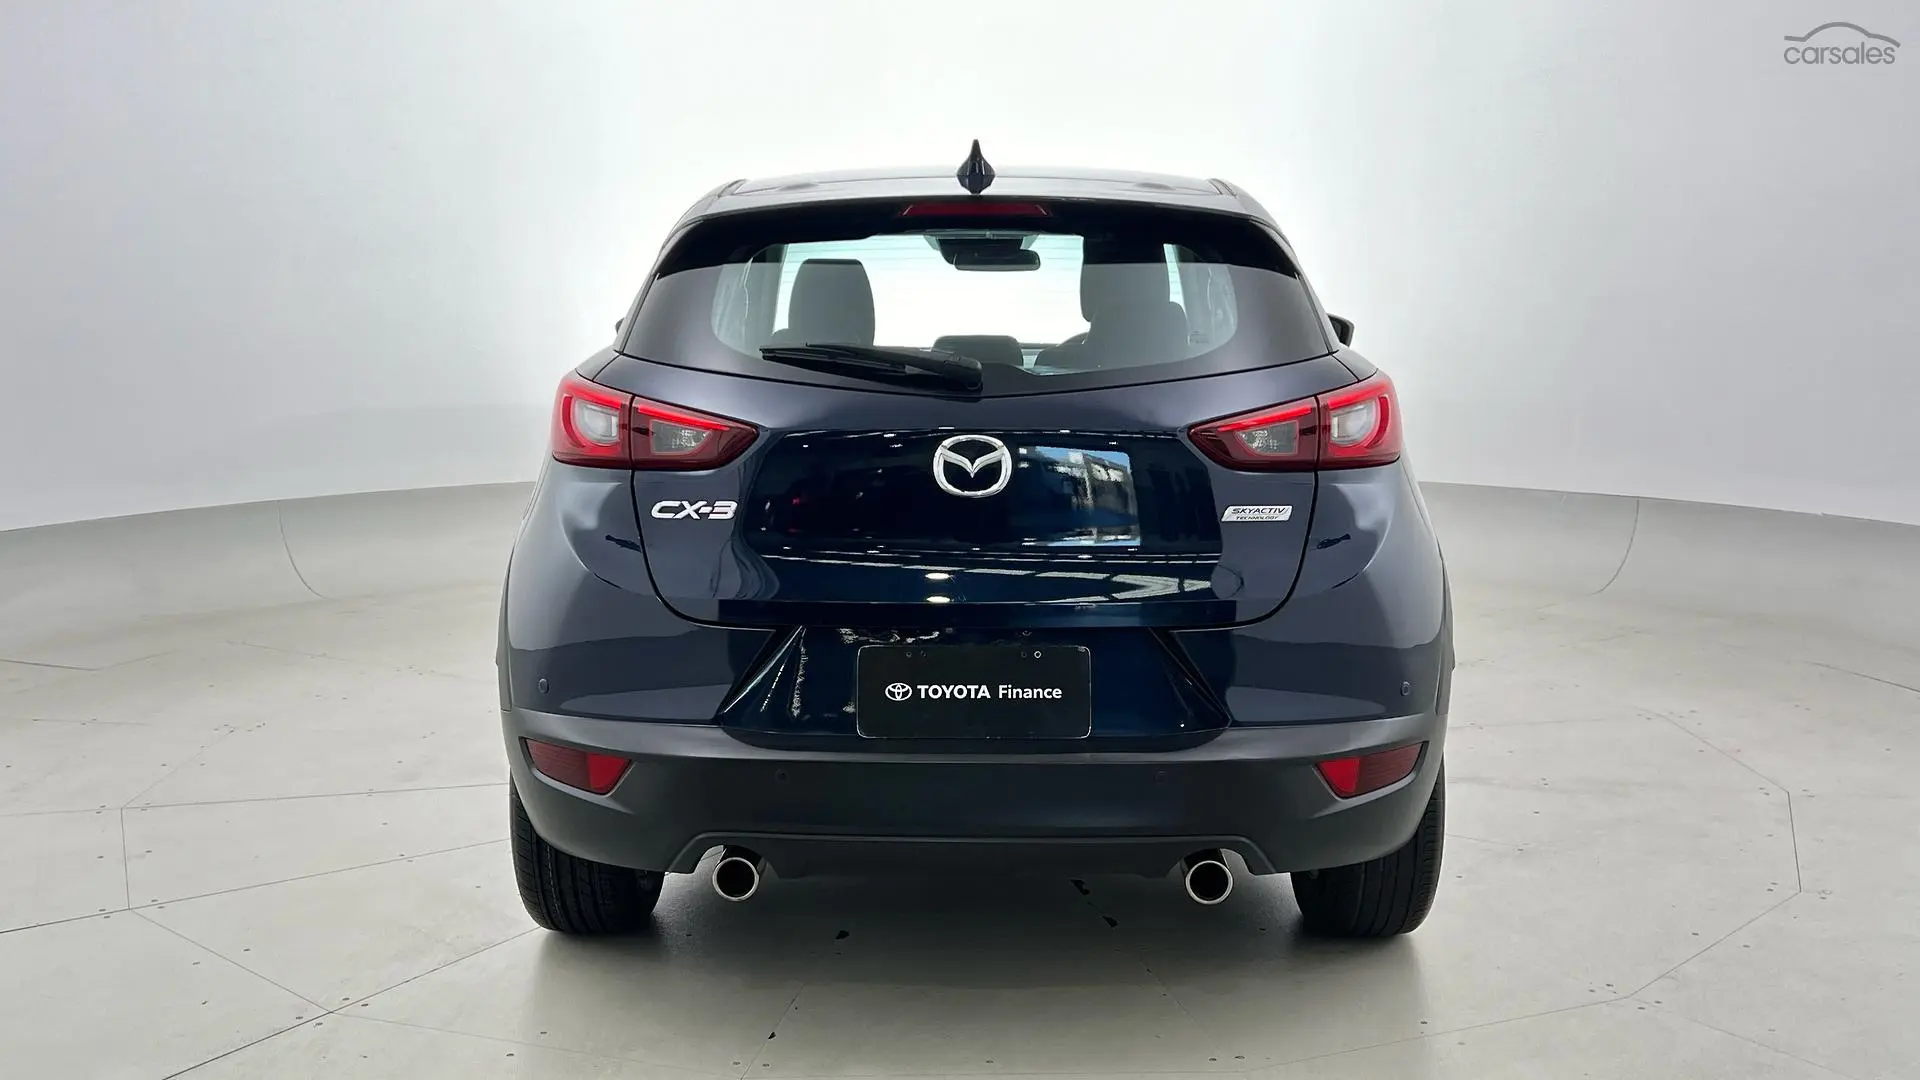 2016 Mazda CX-3 Image 6